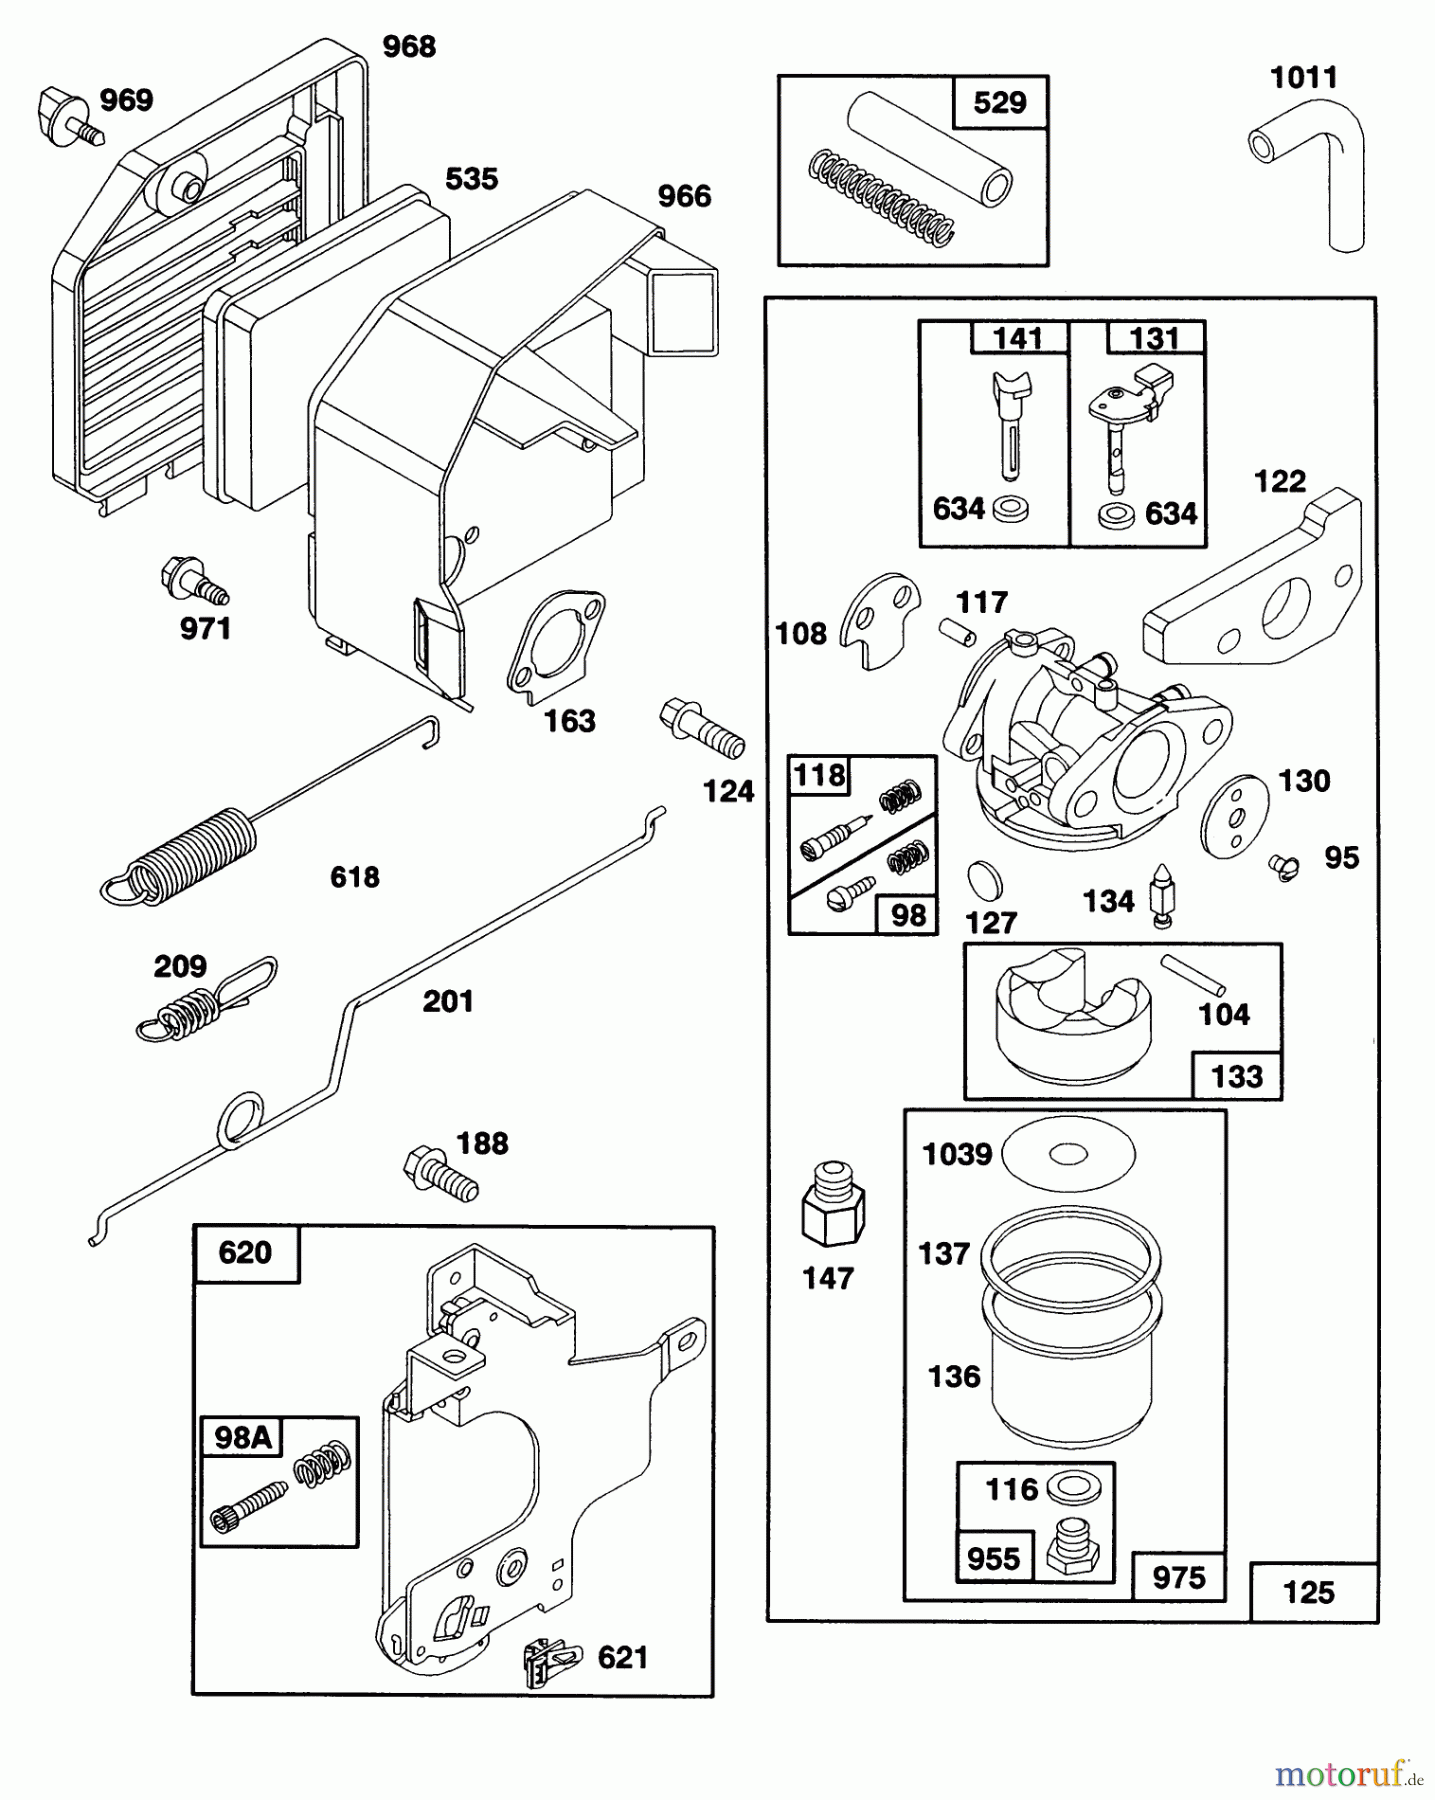  Toro Neu Mowers, Walk-Behind Seite 1 20210 - Toro Lawnmower, 1992 (2000001-2999999) ENGINE GTS-150 77-8990 #2